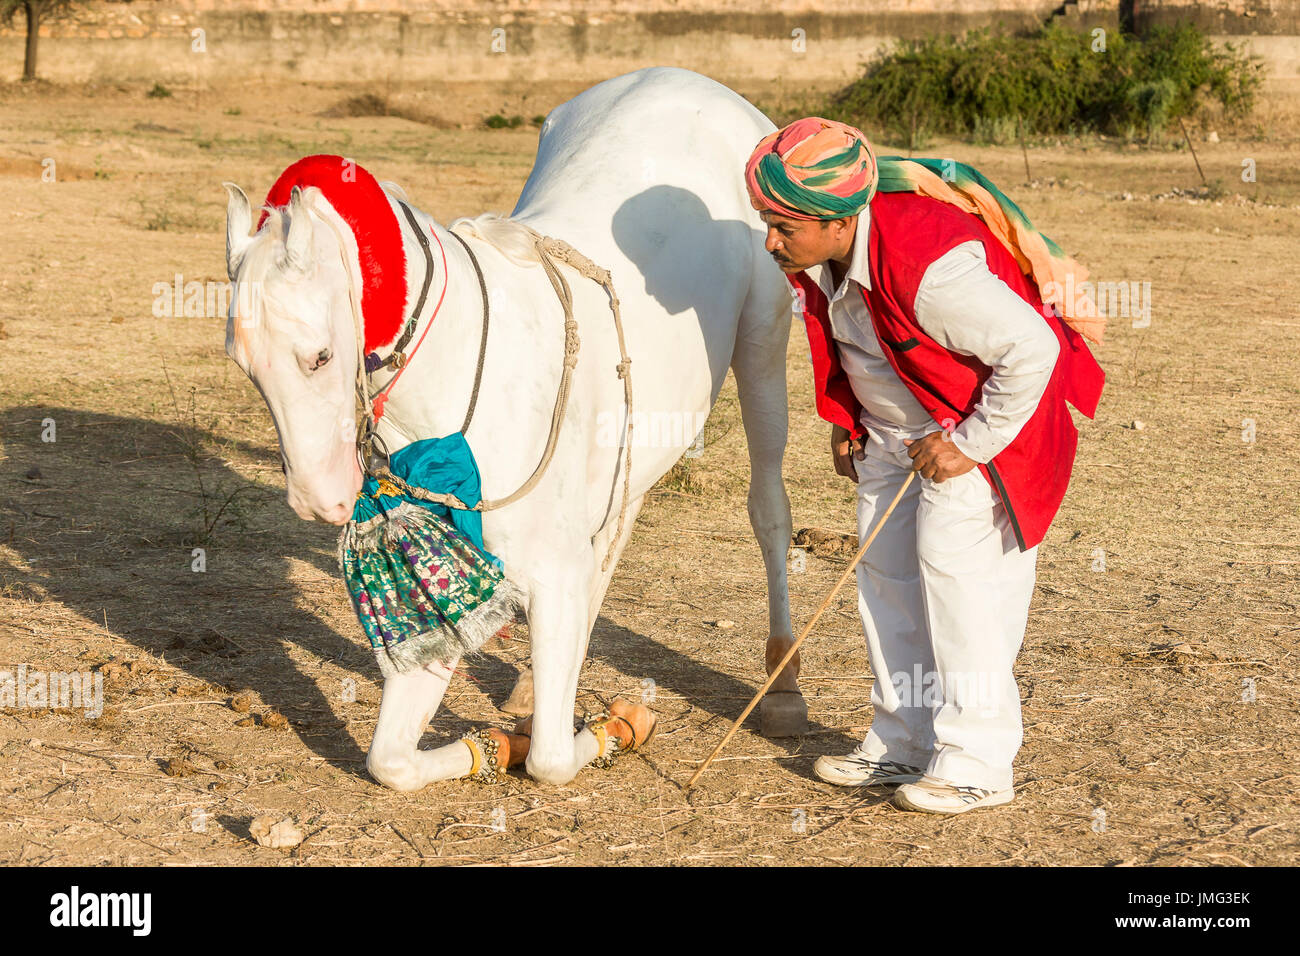 Caballo Marwari. Mare blanco dominante de rodillas durante una tradicional danza de caballos. Rajasthan, India Foto de stock